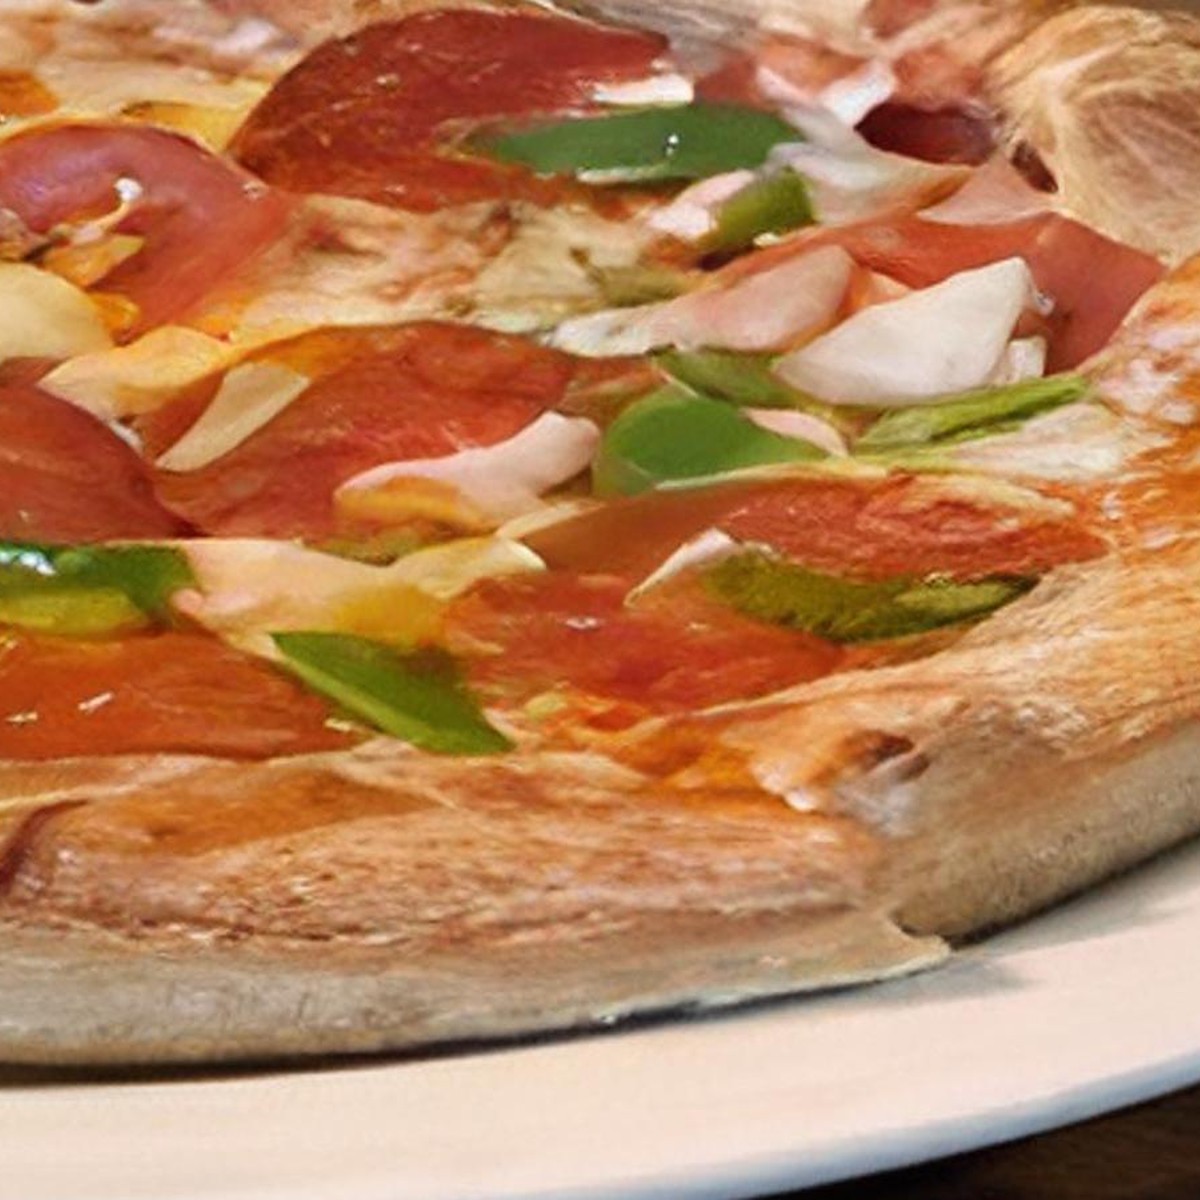 Diet Dr. Pepper - Menu - Milton's Pizza & Pasta